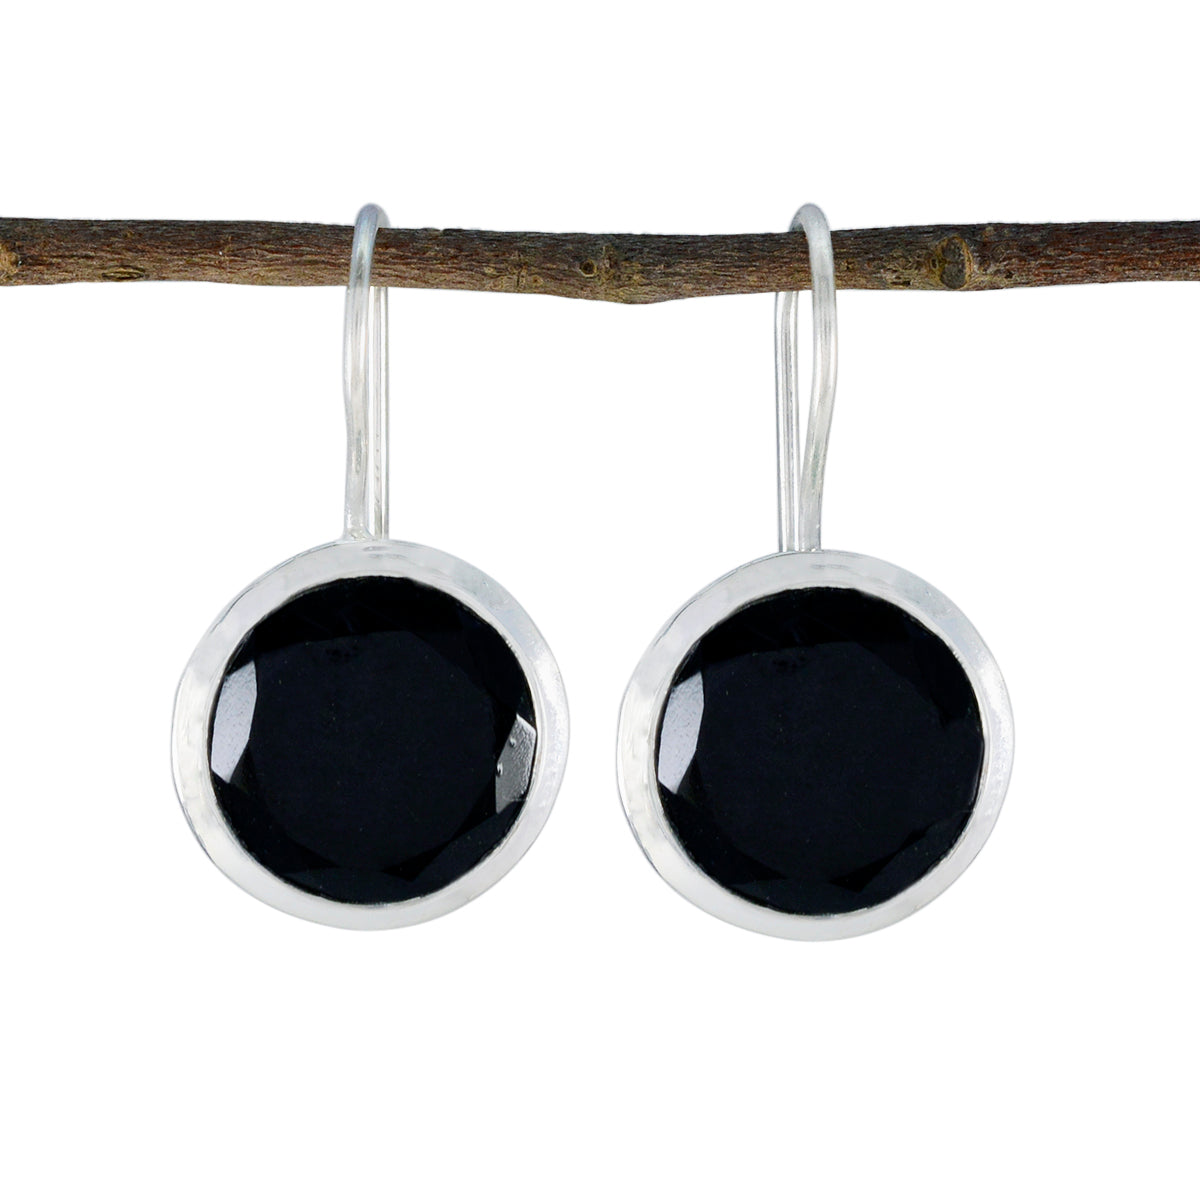 Riyo – boucle d'oreille céleste en argent sterling pour femme, onyx noir, réglage de la lunette, boucle d'oreille noire pendante